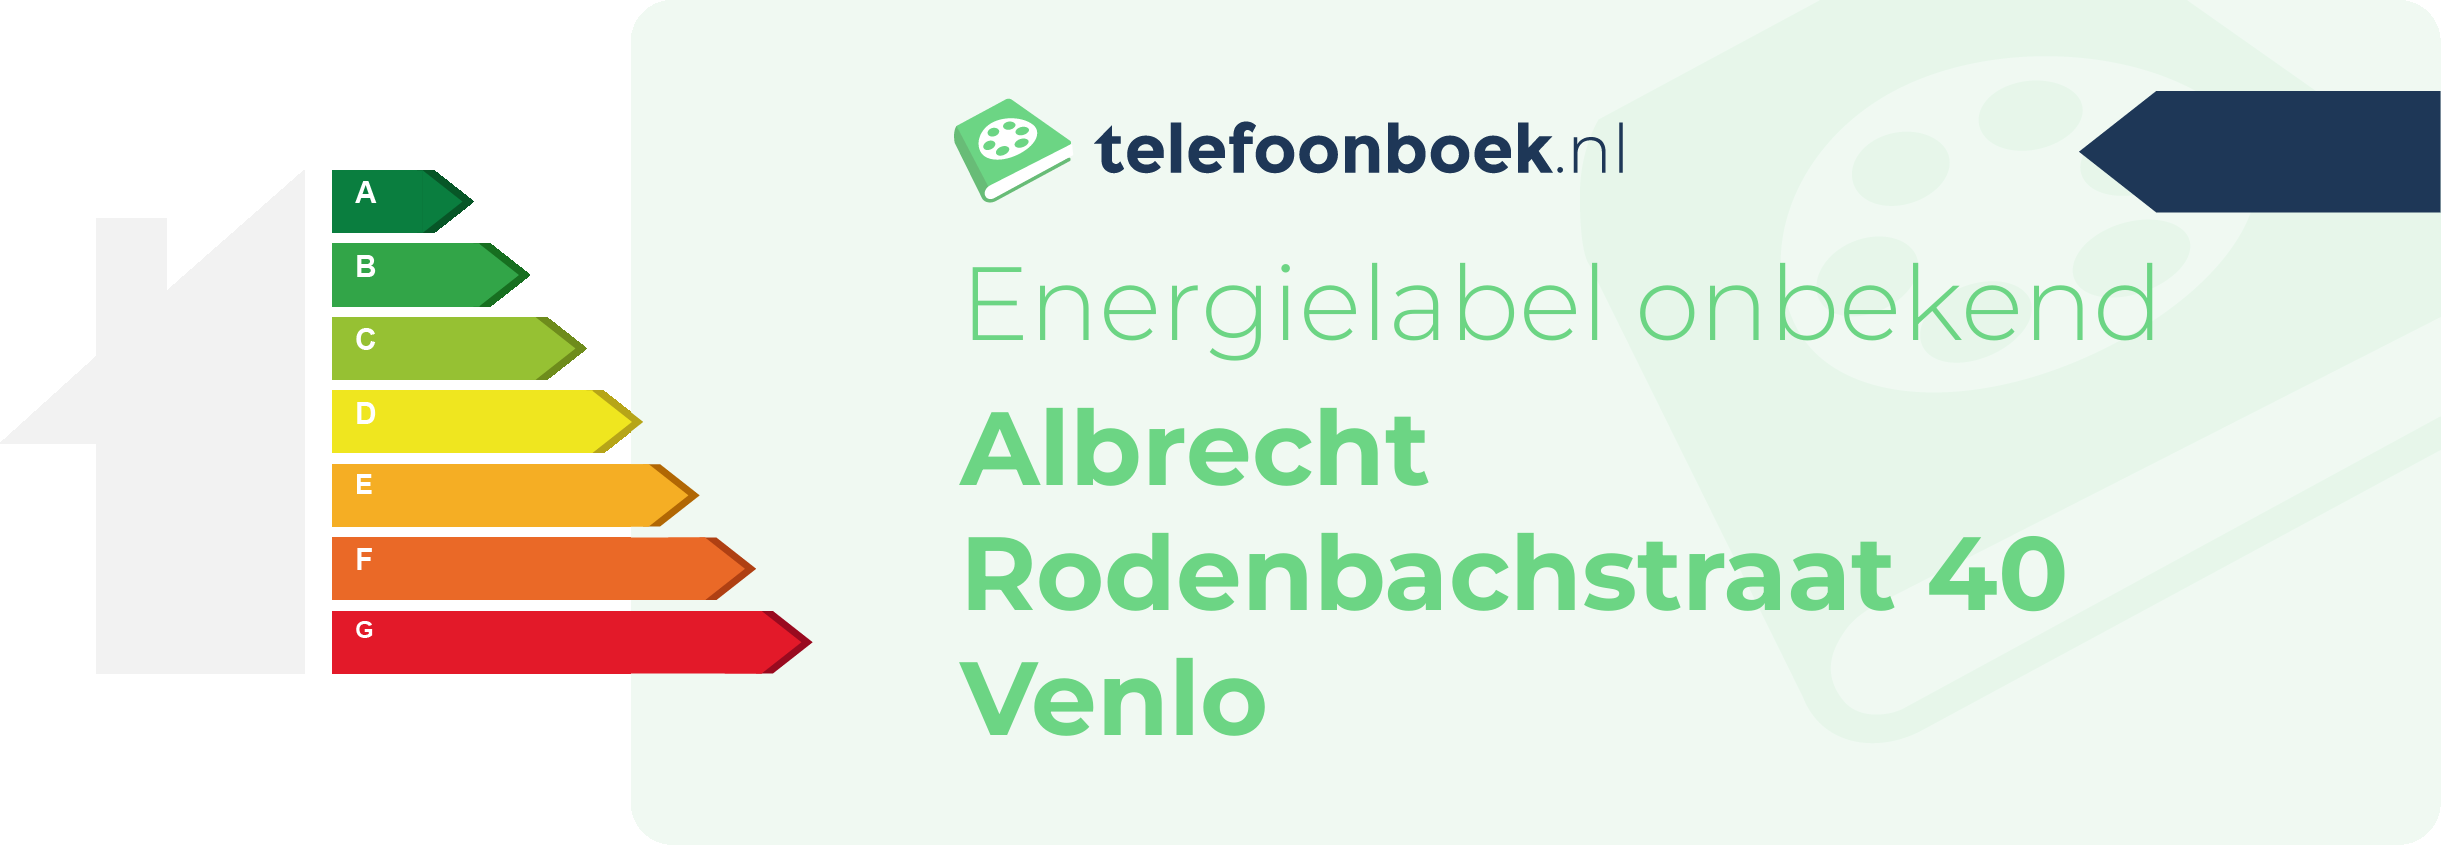 Energielabel Albrecht Rodenbachstraat 40 Venlo